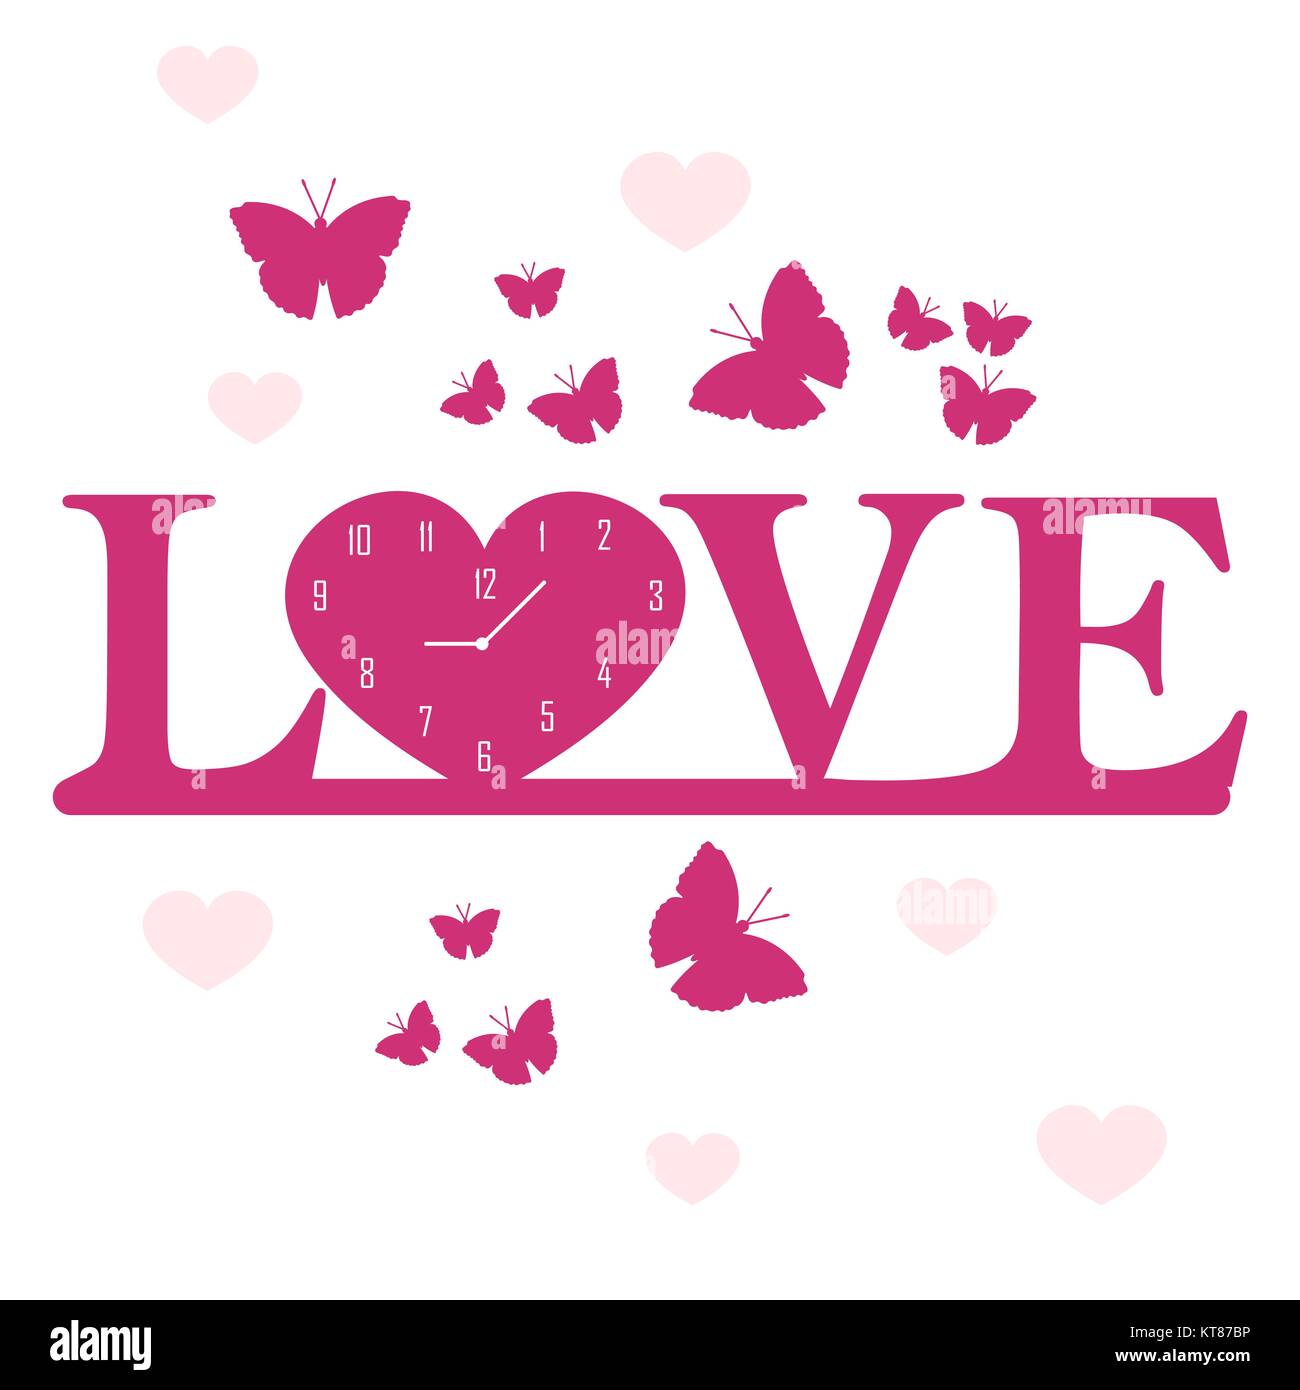 Uhr in der Form des Herzens und der Aufschrift Liebe und Herzen, Schmetterlinge. Design für Banner, Poster oder Drucken. Grusskarte Valentinstag. Stock Vektor